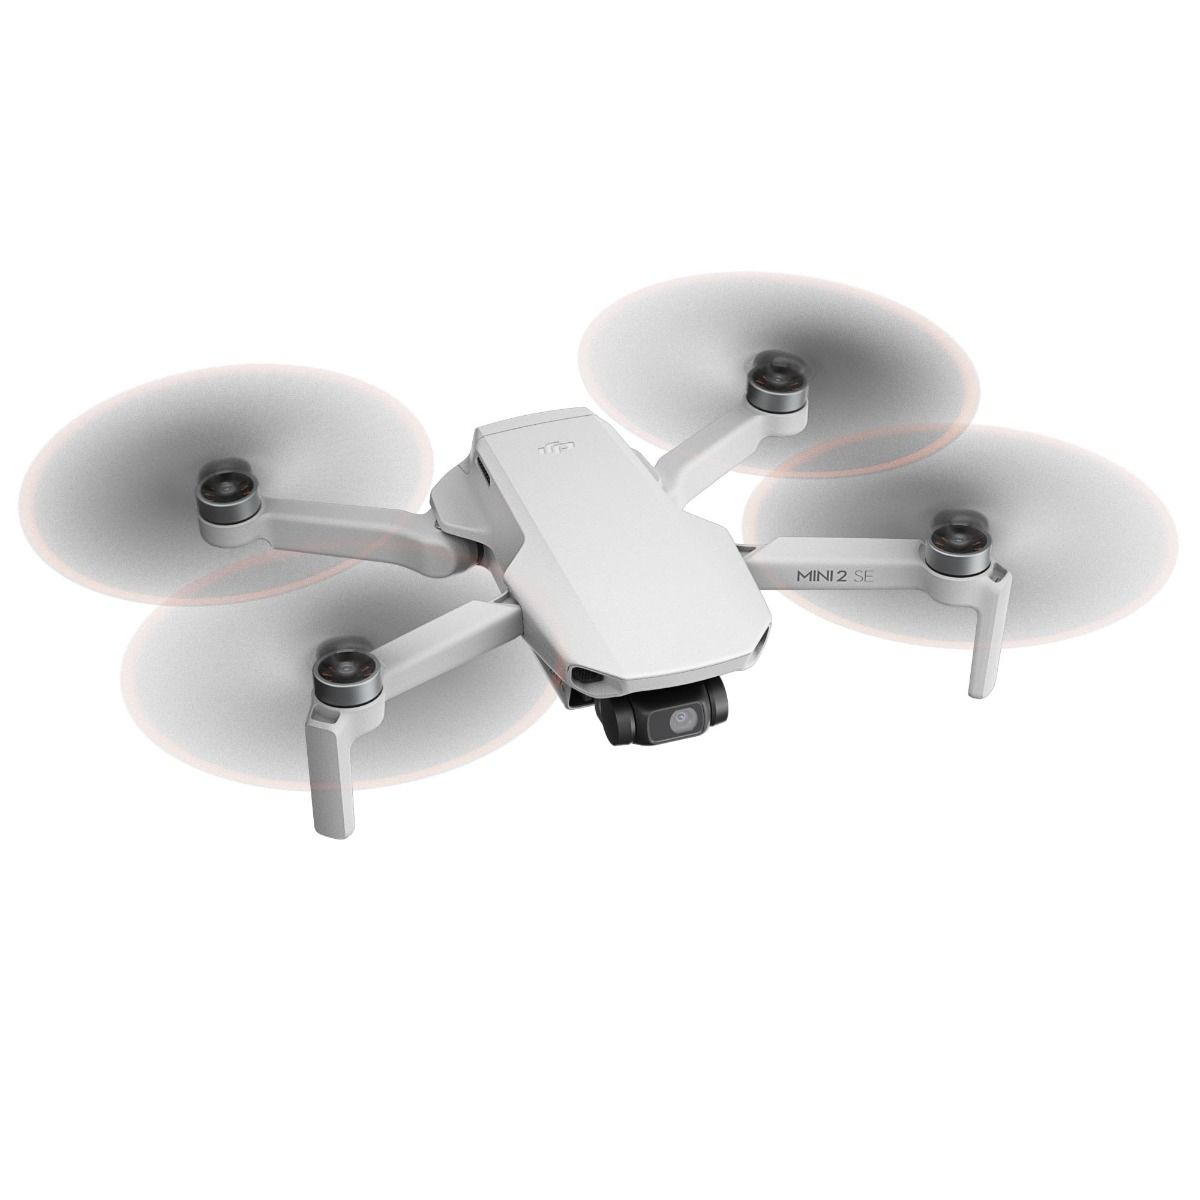 Dron DJI Mini 2 SE - Fotomecánica